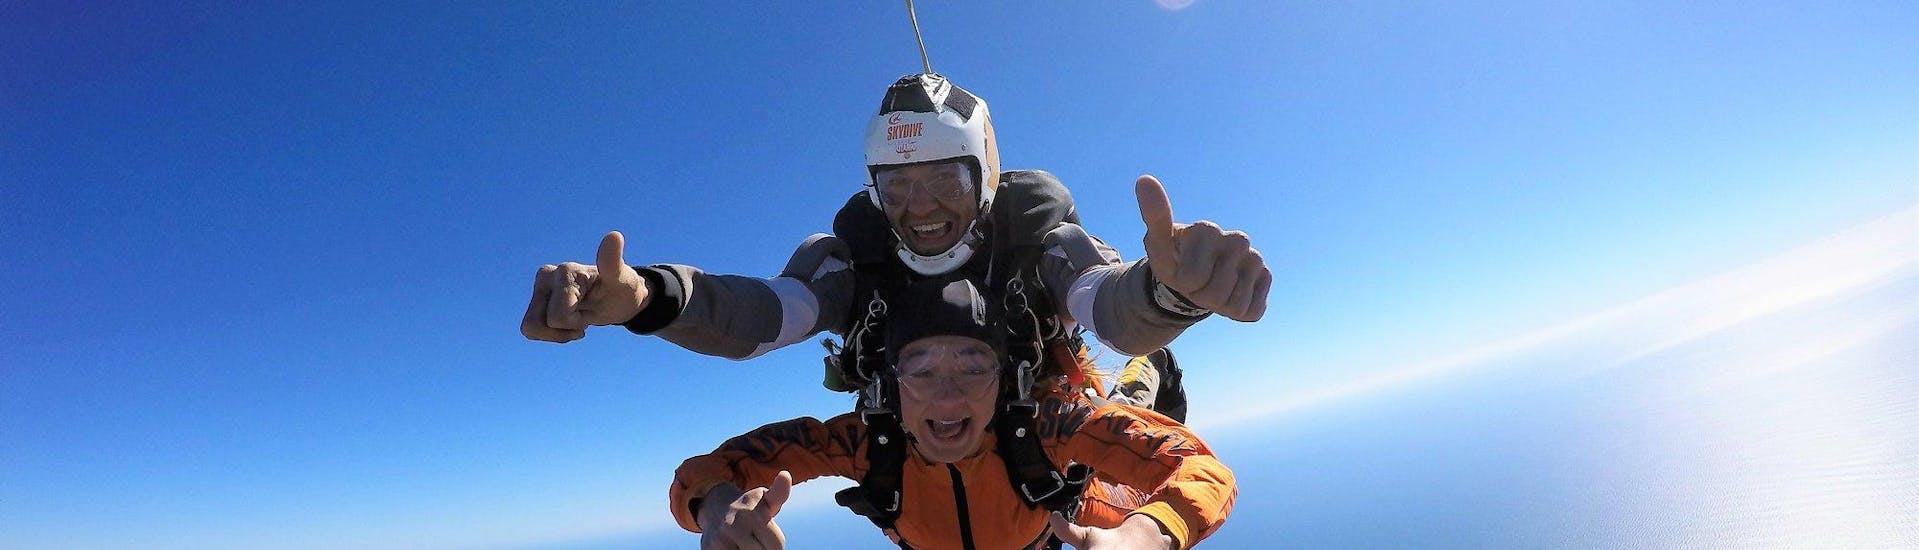 Ein junges Mädchen im freien Fall mit ihrem Lehrer während des Tandemfallschirmsprungs aus 15.000 Fuß (ca. 4,57 km) - Algarve mit Skydive Algarve.